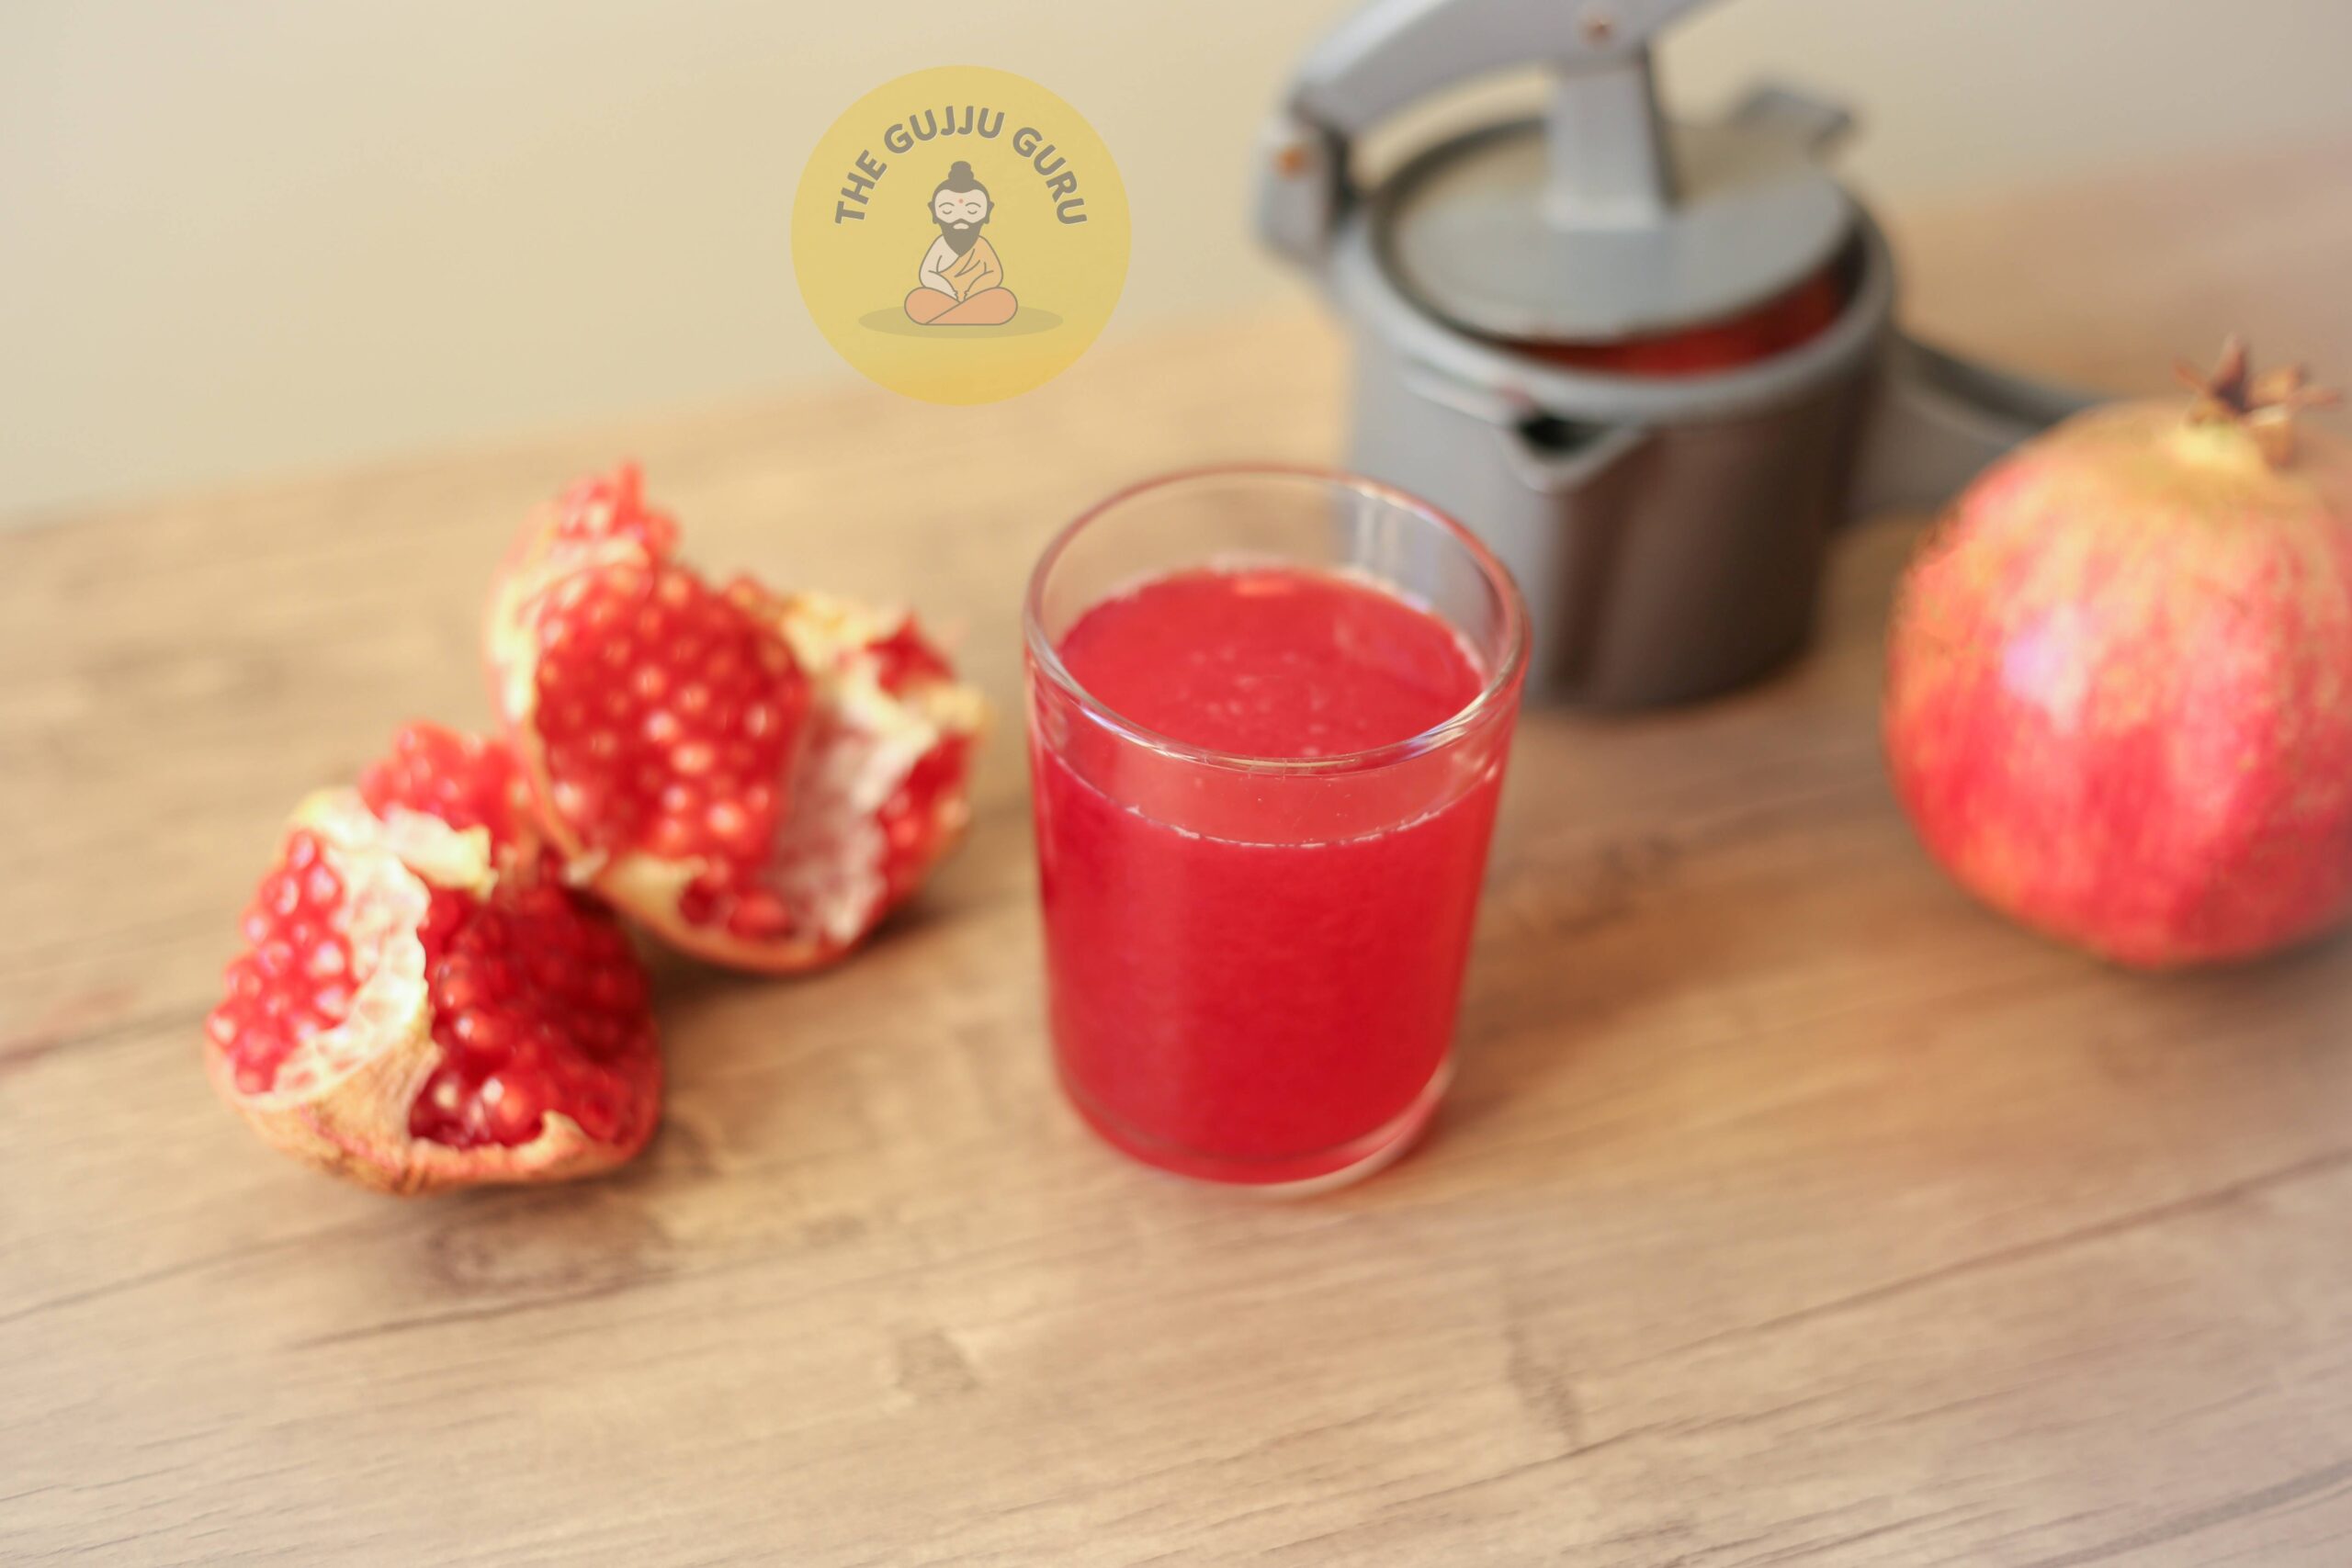 તંદુરસ્ત આરોગ્ય માટે દાડમ ના 10 અગત્ય ના લાભો (Top 10 benefits of pomegranate):